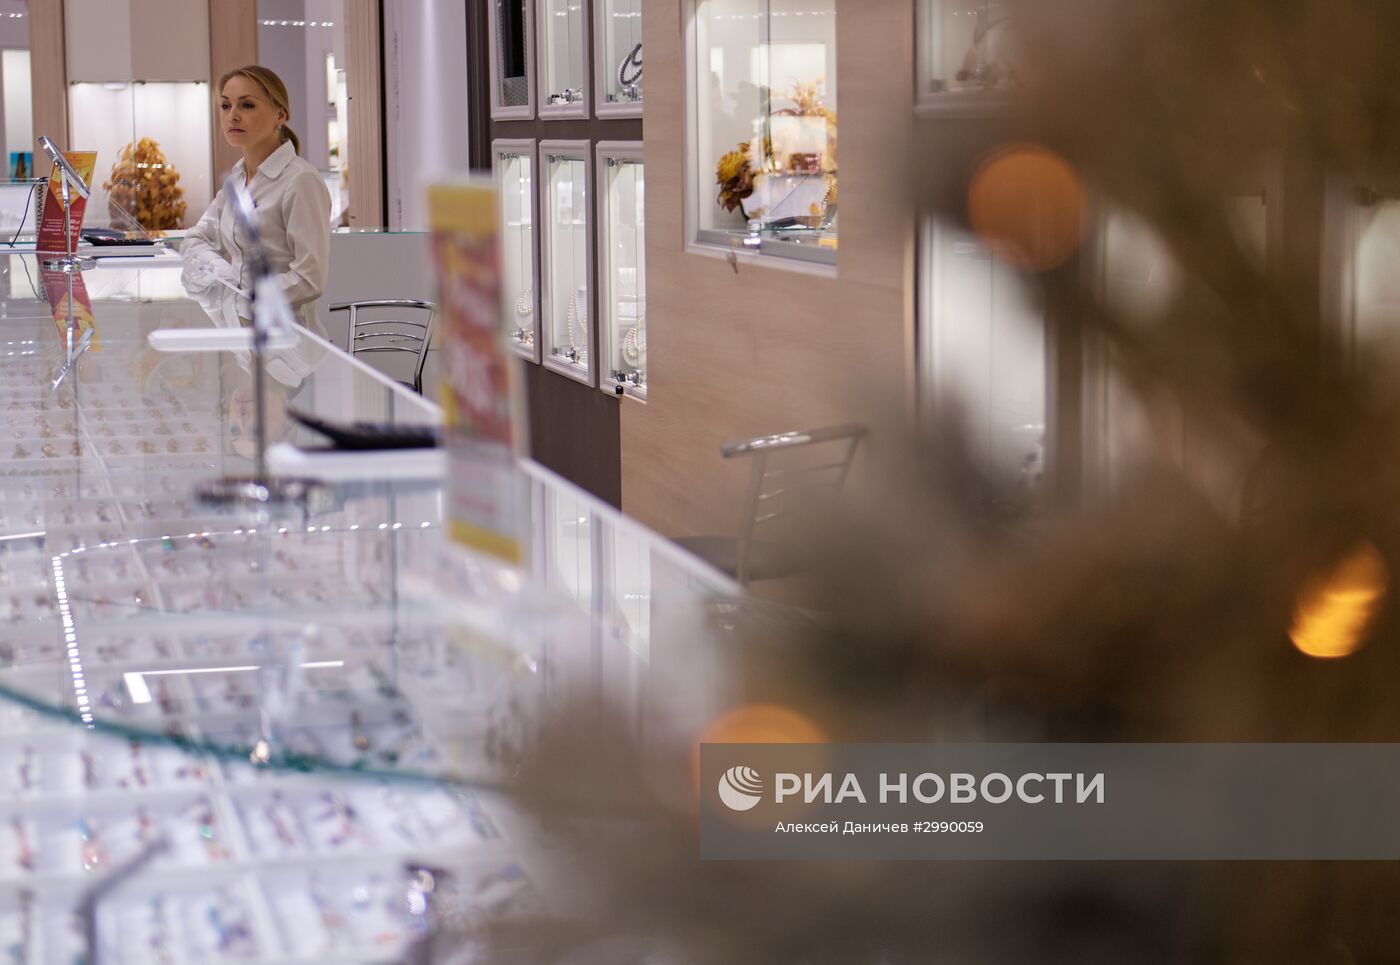 Ювелирный завод "Русские самоцветы" в Санкт-Петербурге